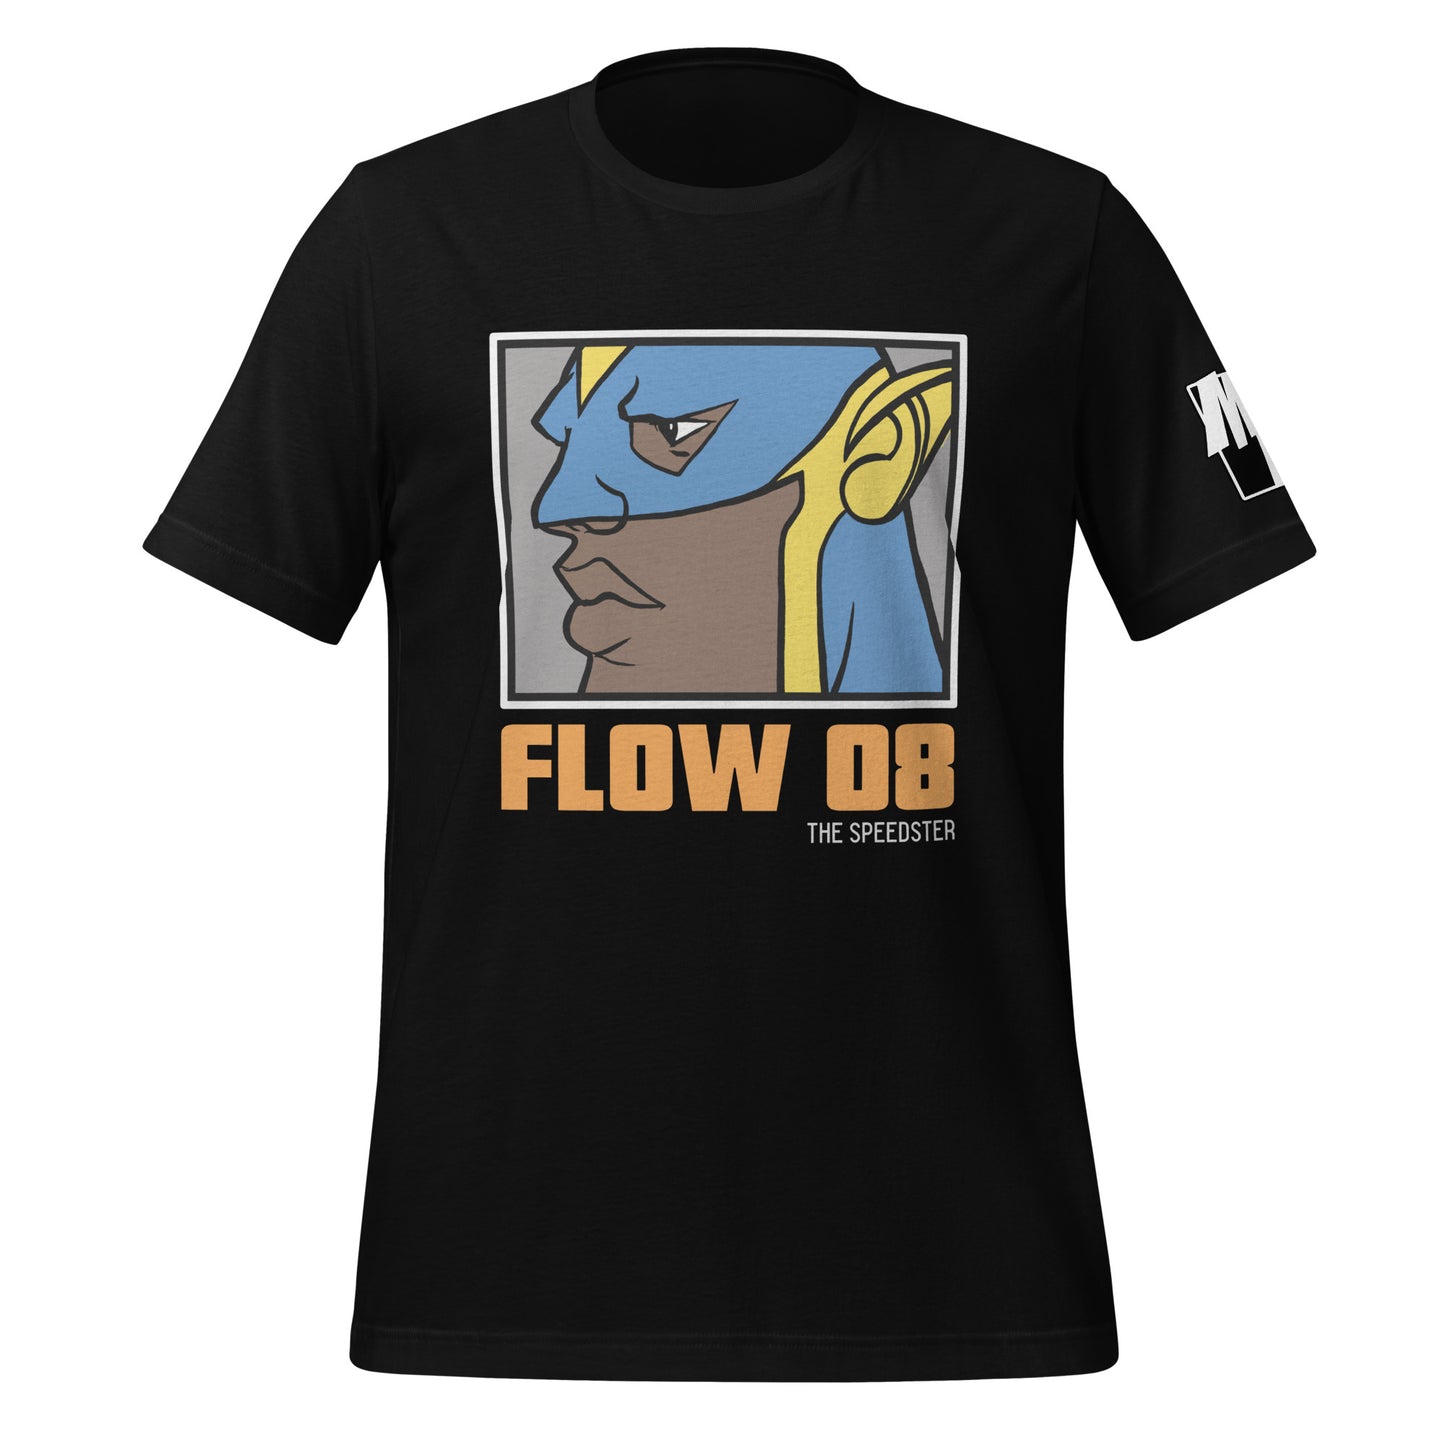 FLOW 08 (THE SPEEDSTER) T-Shirt